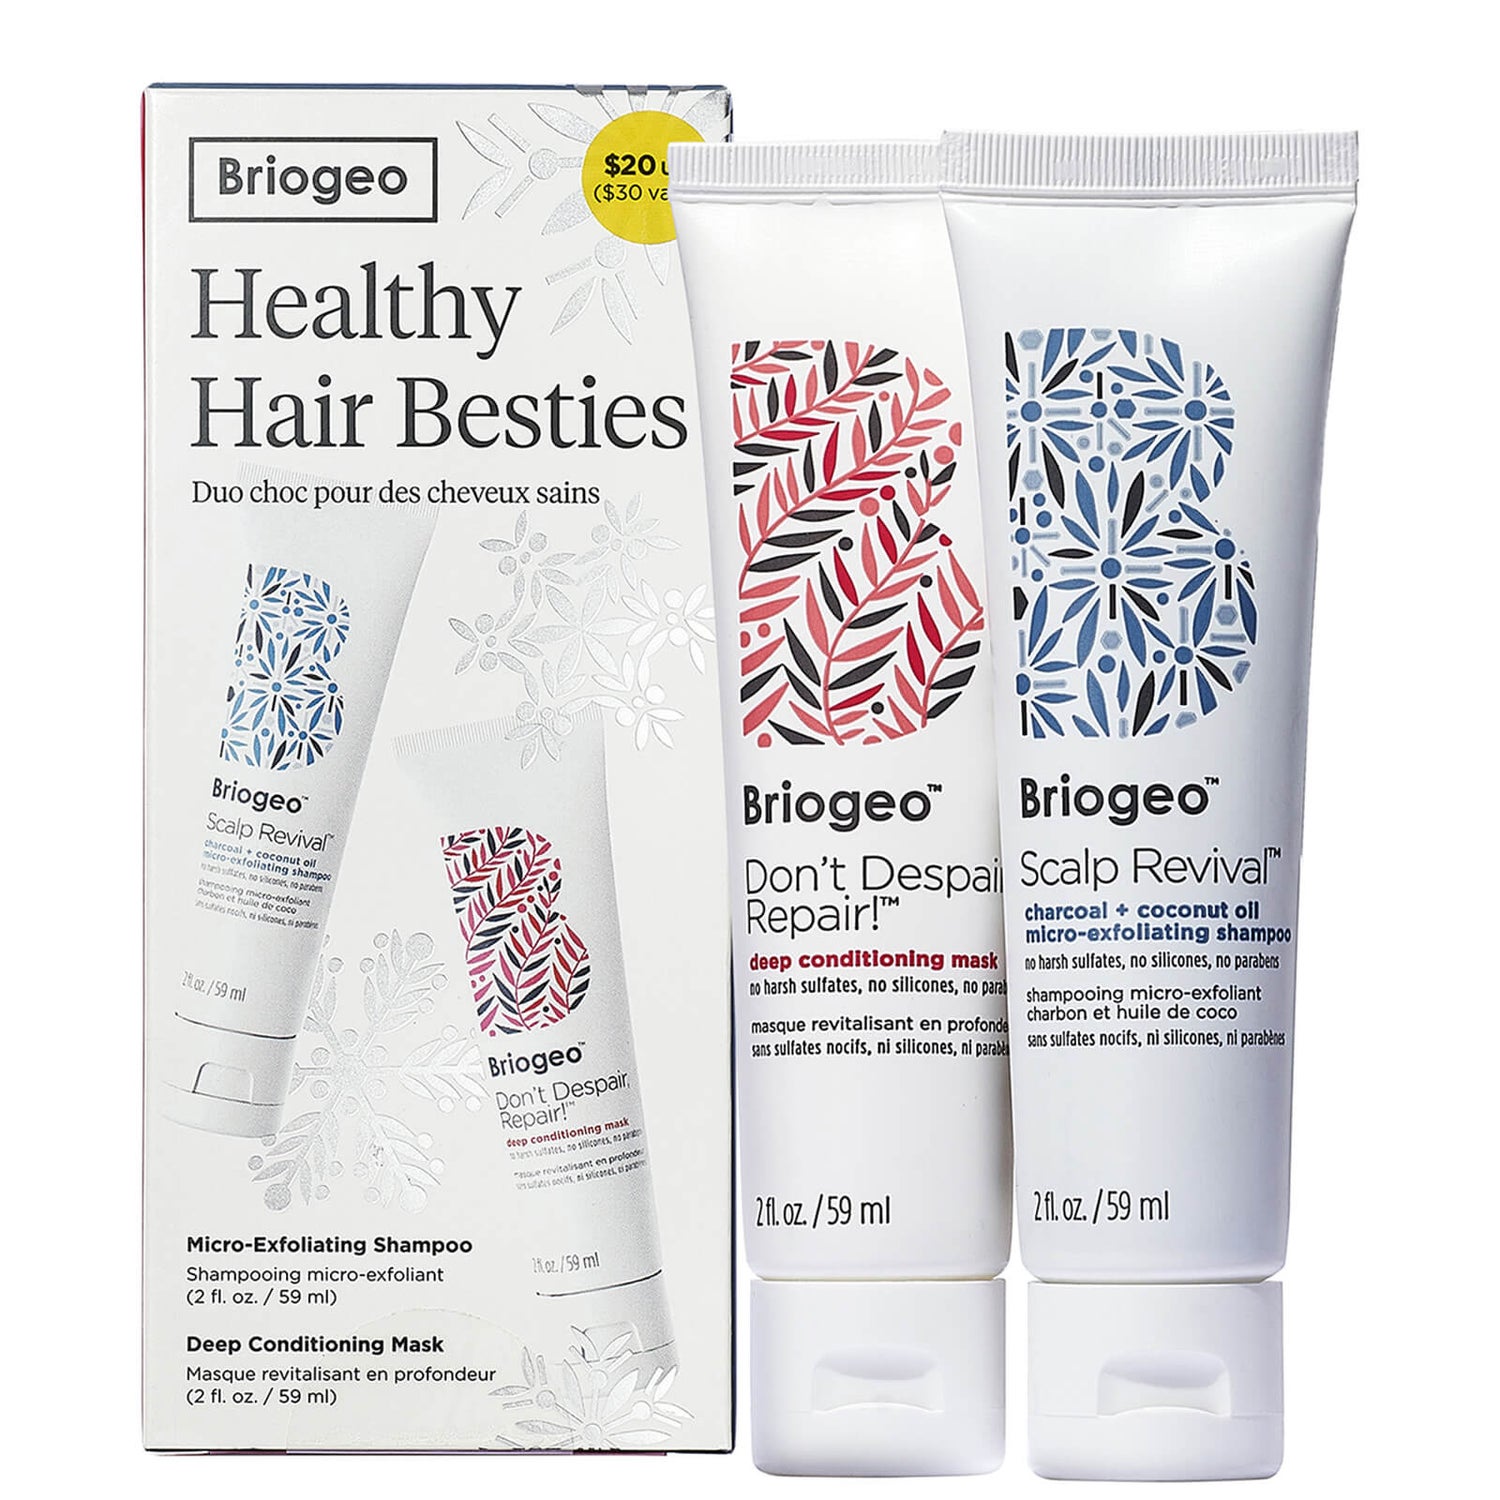 Briogeo Scalp Revival Shampoo and Don’t Despair, Repair! Hair Mask Travel Gift Set (Worth $30.00)